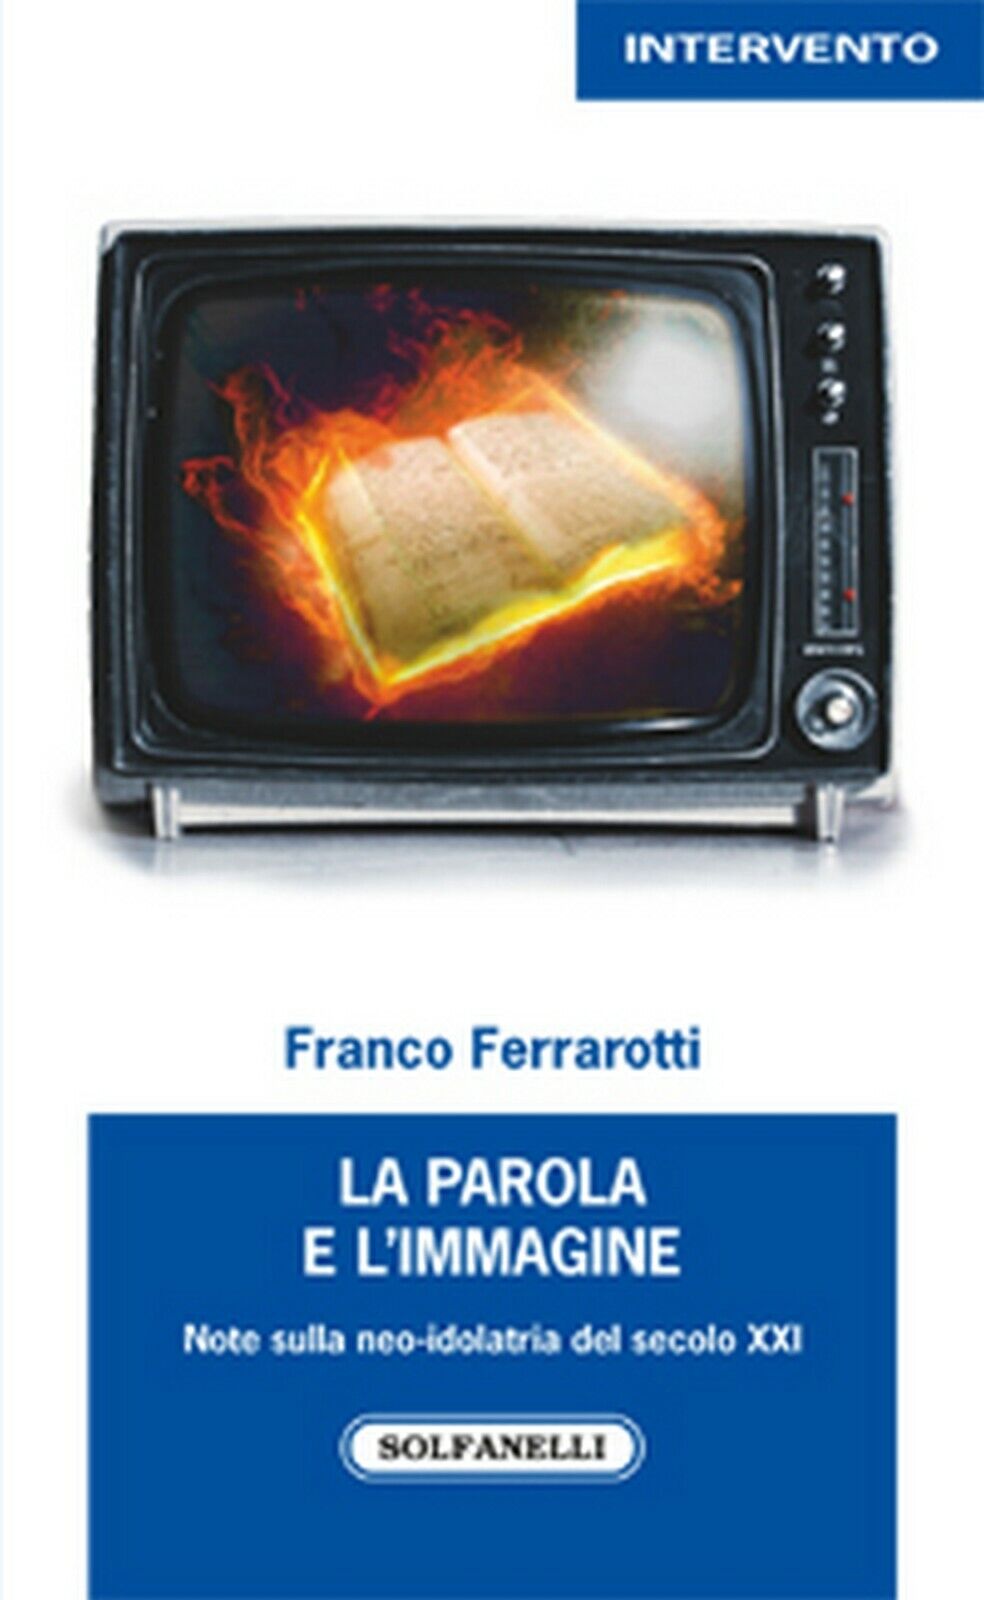 LA PAROLA E L'IMMAGINE  di Franco Ferrarotti,  Solfanelli Edizioni